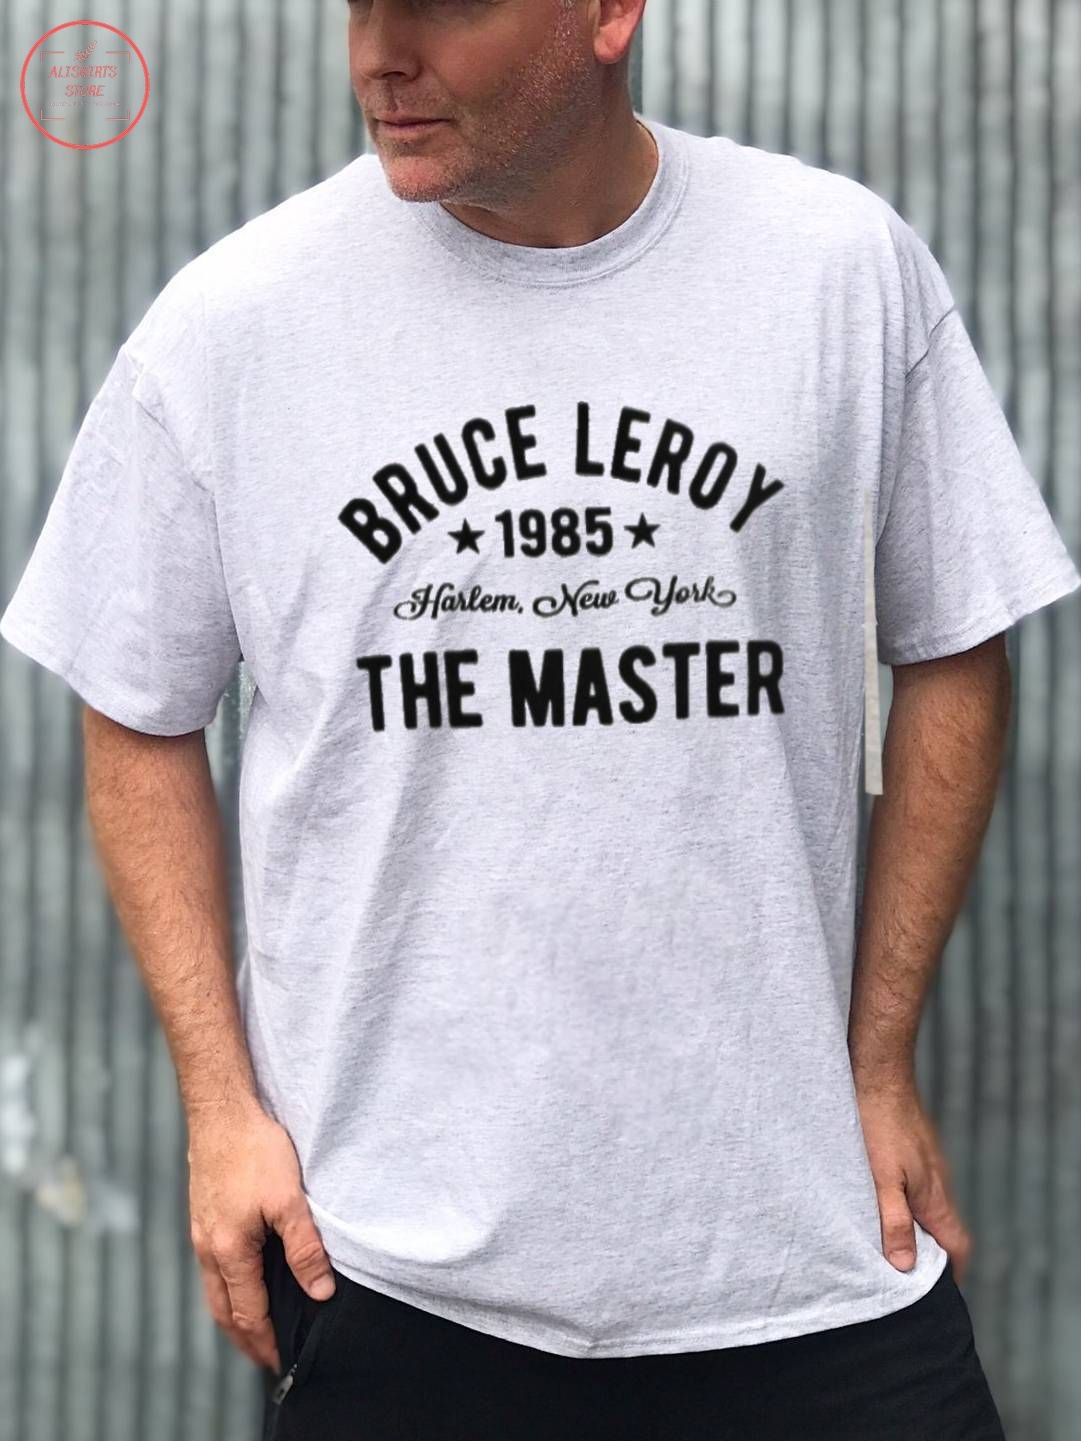 The Last Dragon Bruce Leroy Harlem 1985 shirt